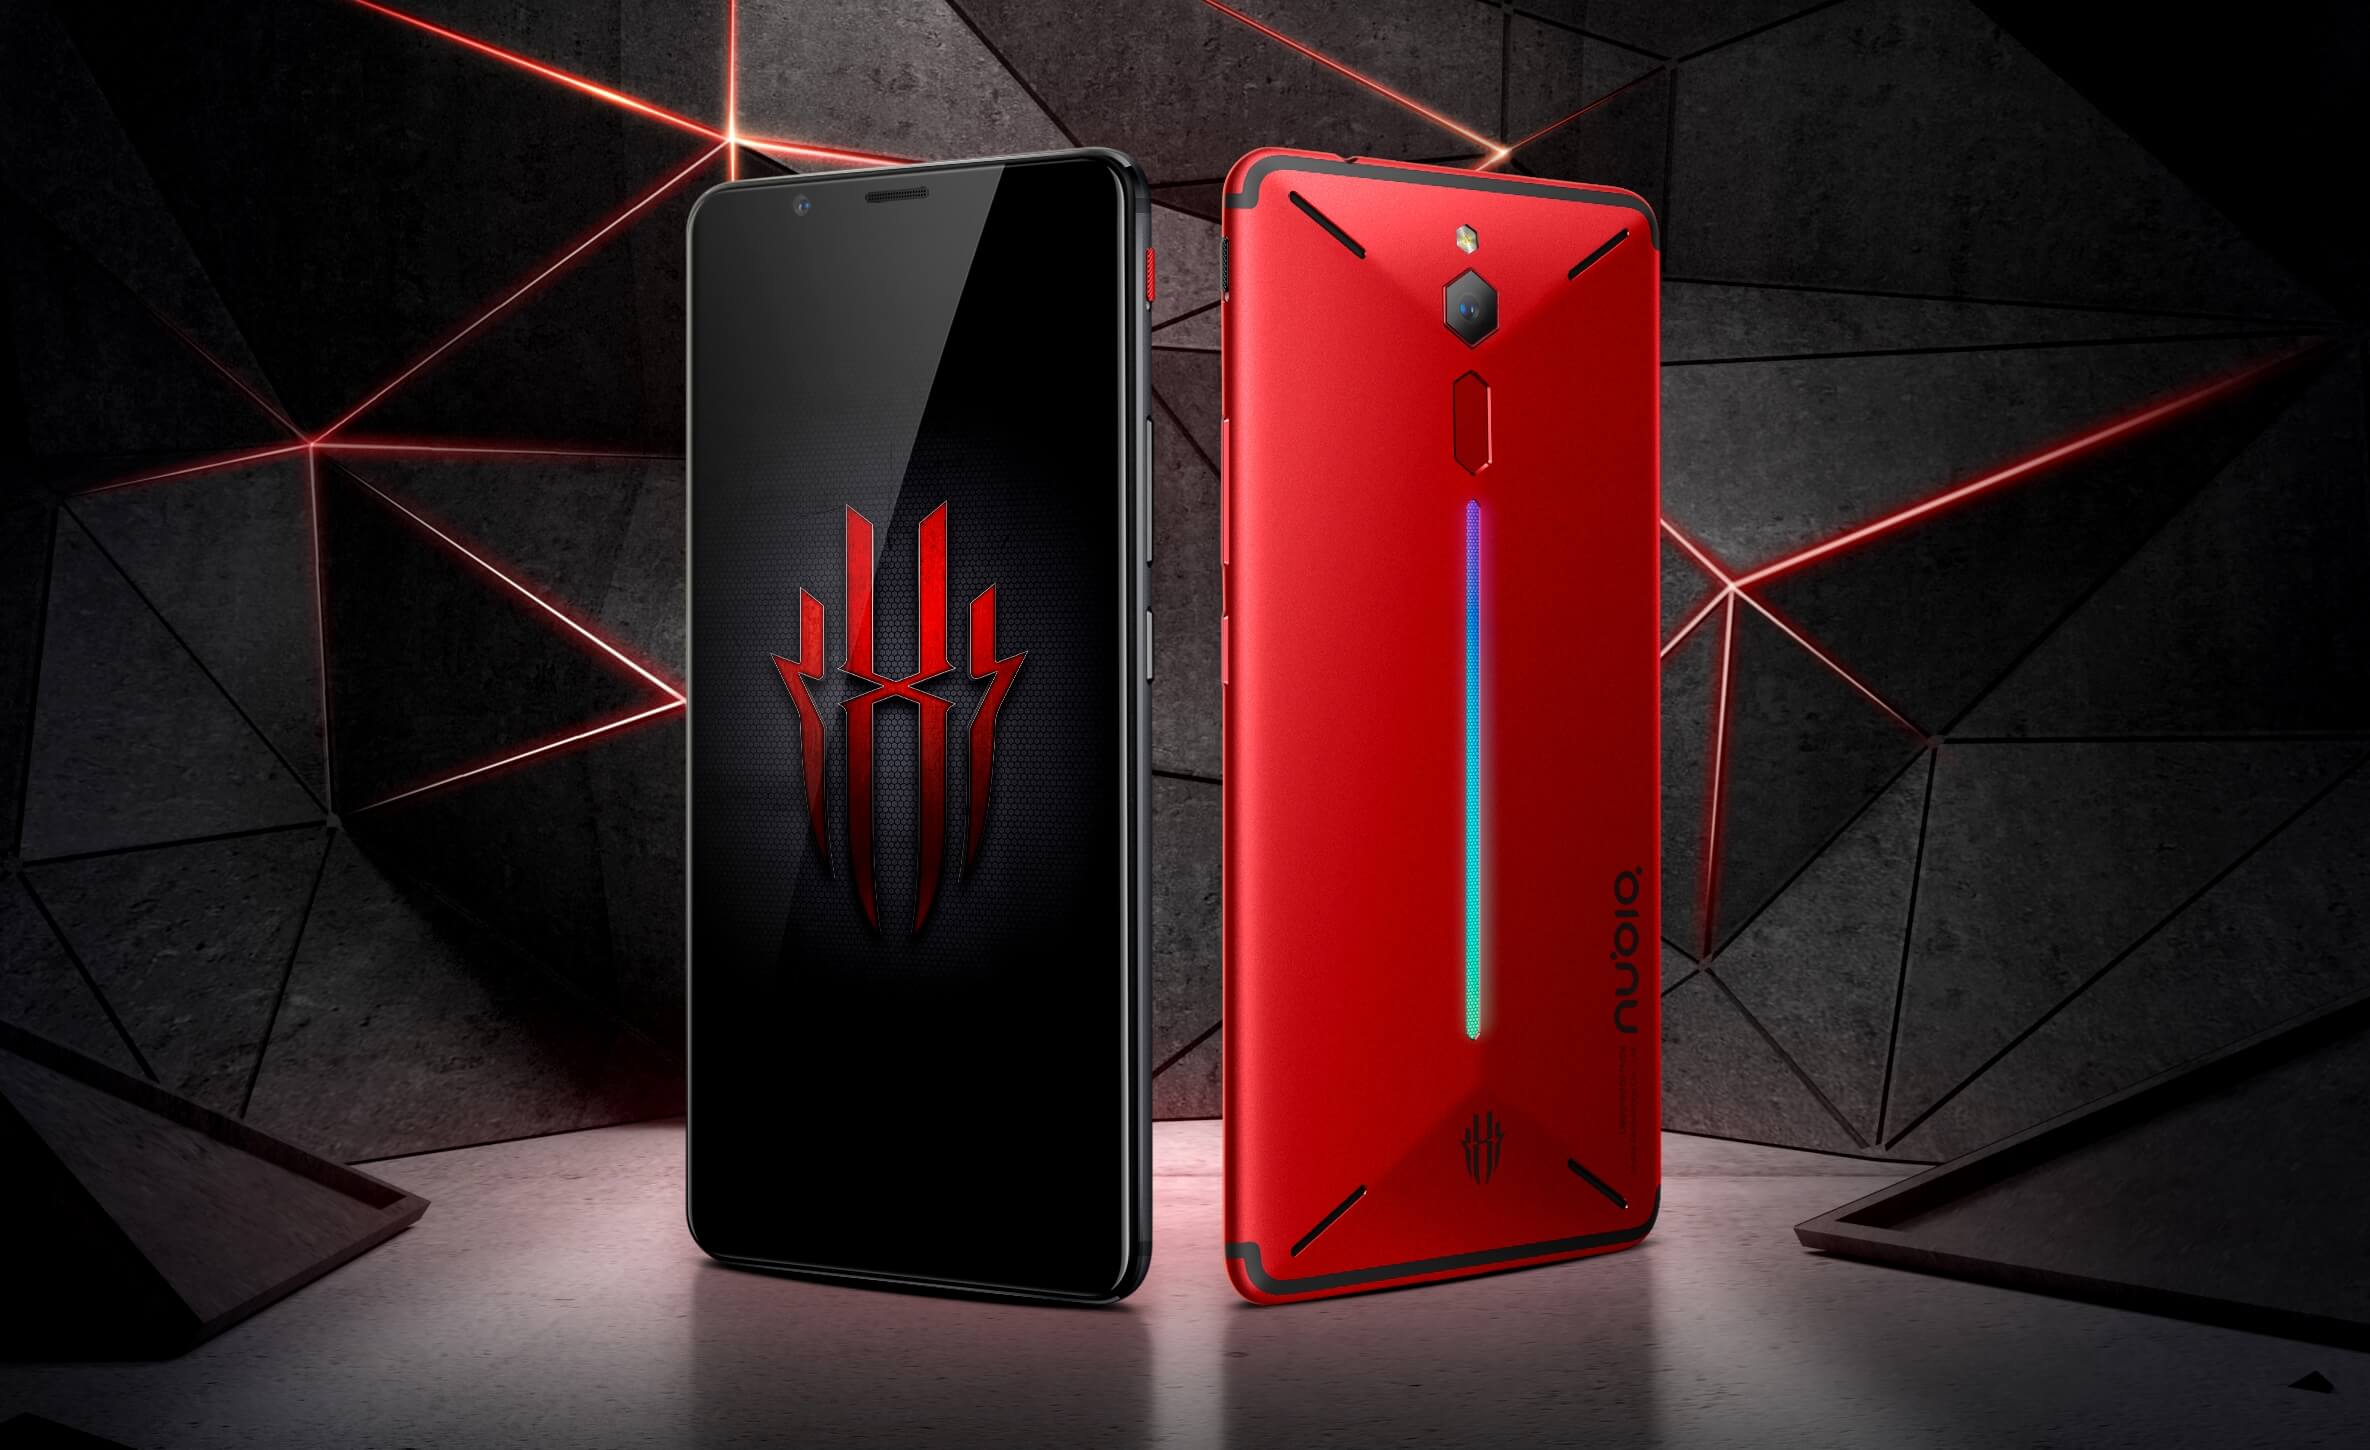 Nubia выпустила игровой смартфон Red Magic на Snapdragon 835 по цене $398